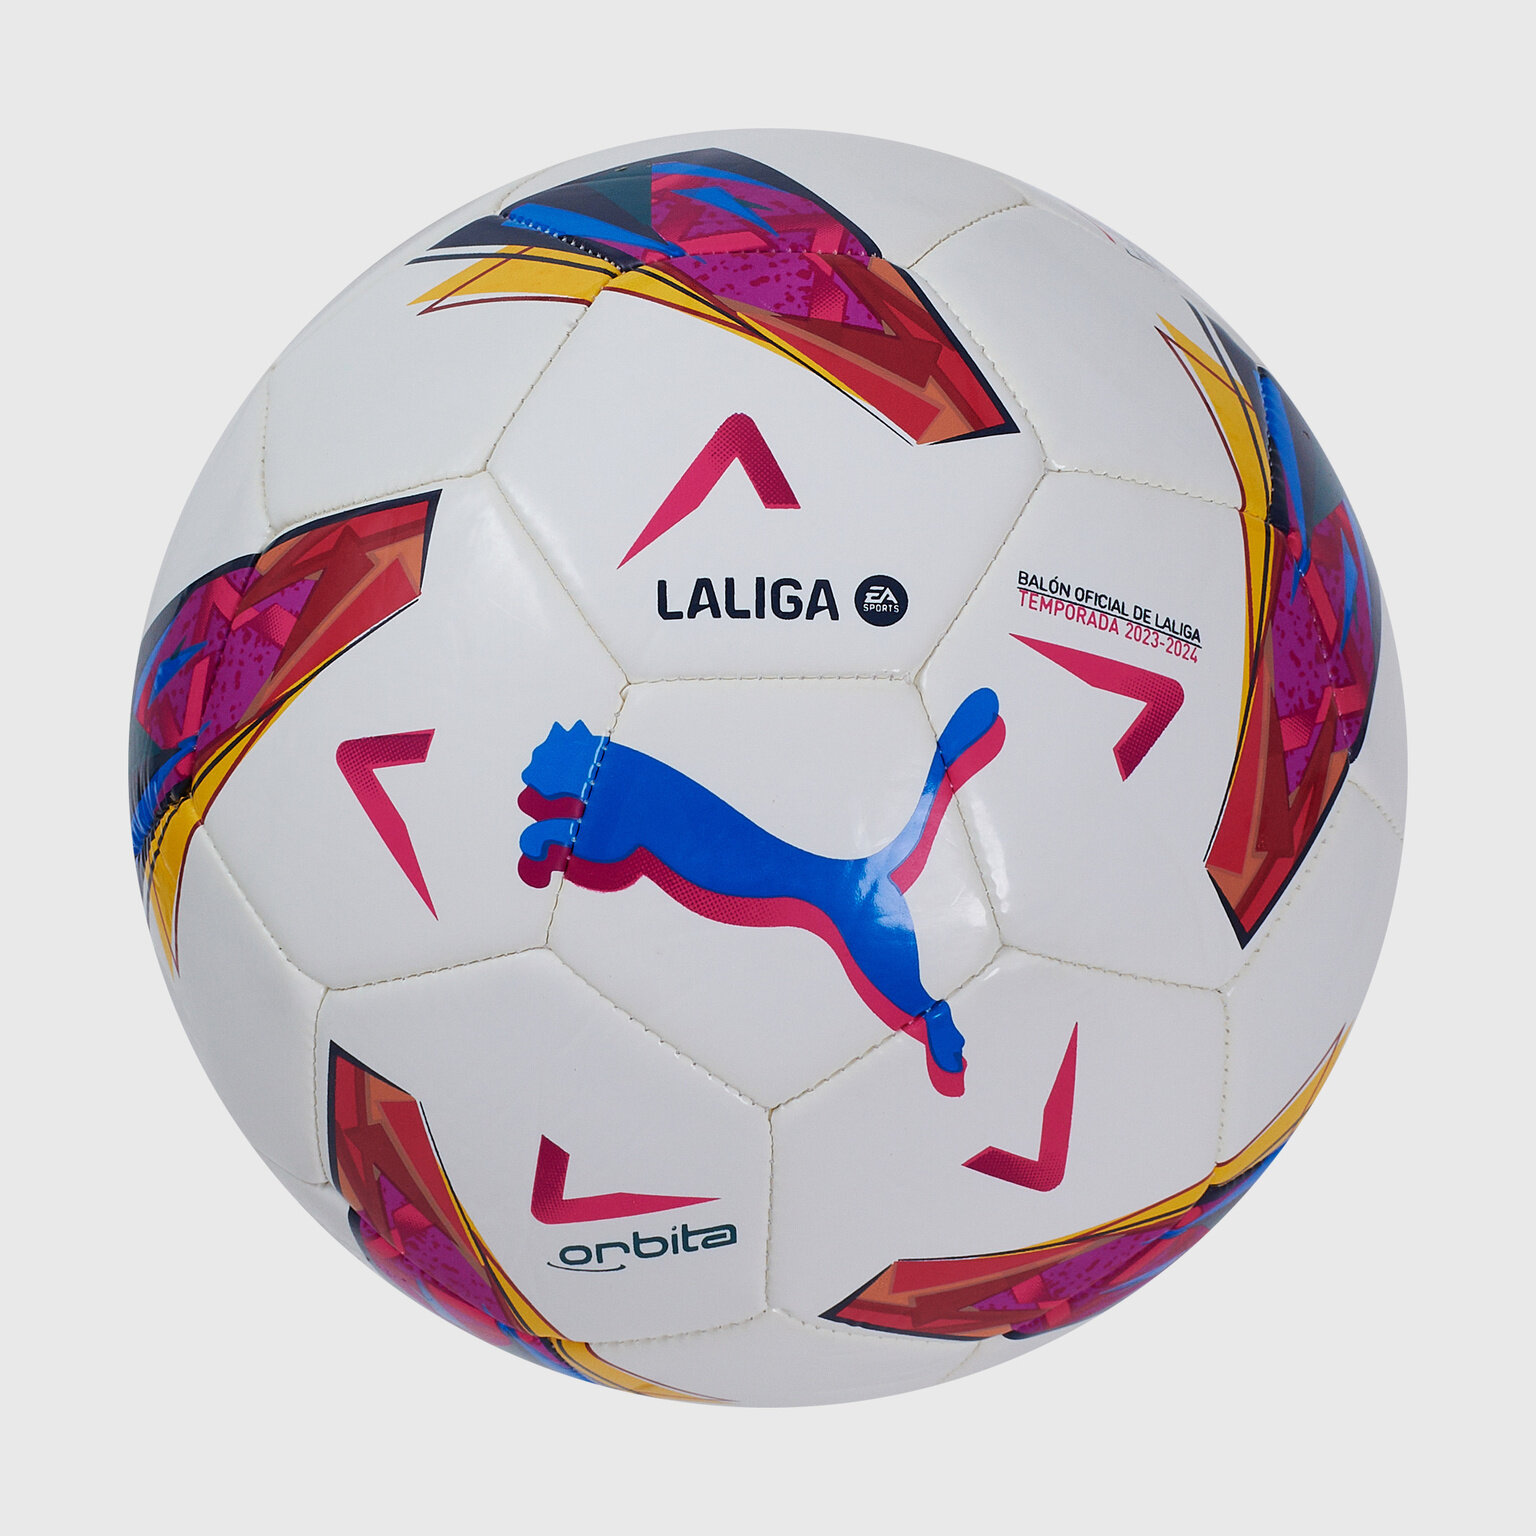 Футбольный мяч Puma Orbita Laliga 1 MS 08410901, размер 4, Белый